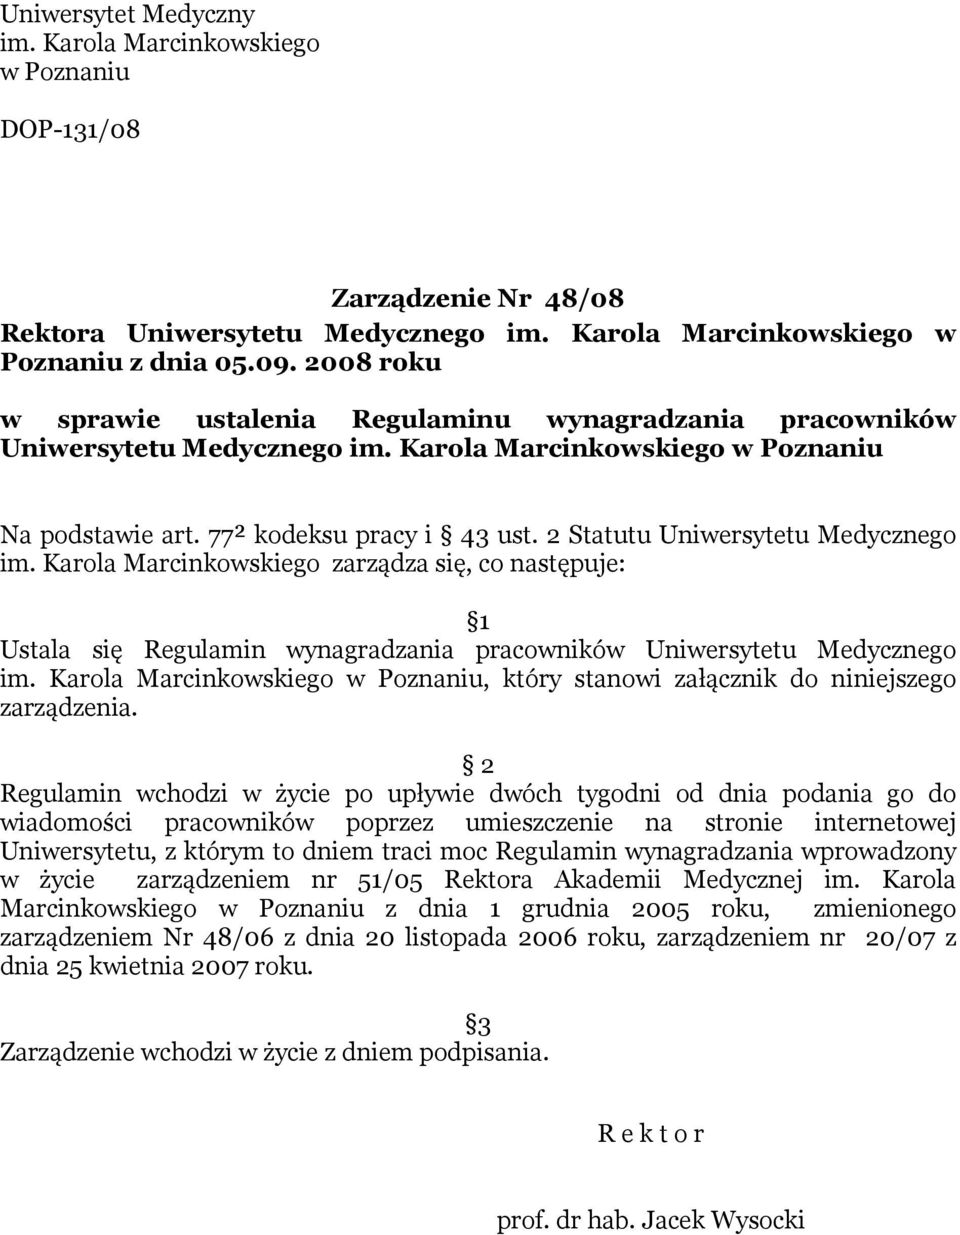 2 Statutu Uniwersytetu Medycznego im. Karola Marcinkowskiego zarządza się, co następuje: 1 Ustala się Regulamin wynagradzania pracowników Uniwersytetu Medycznego im.